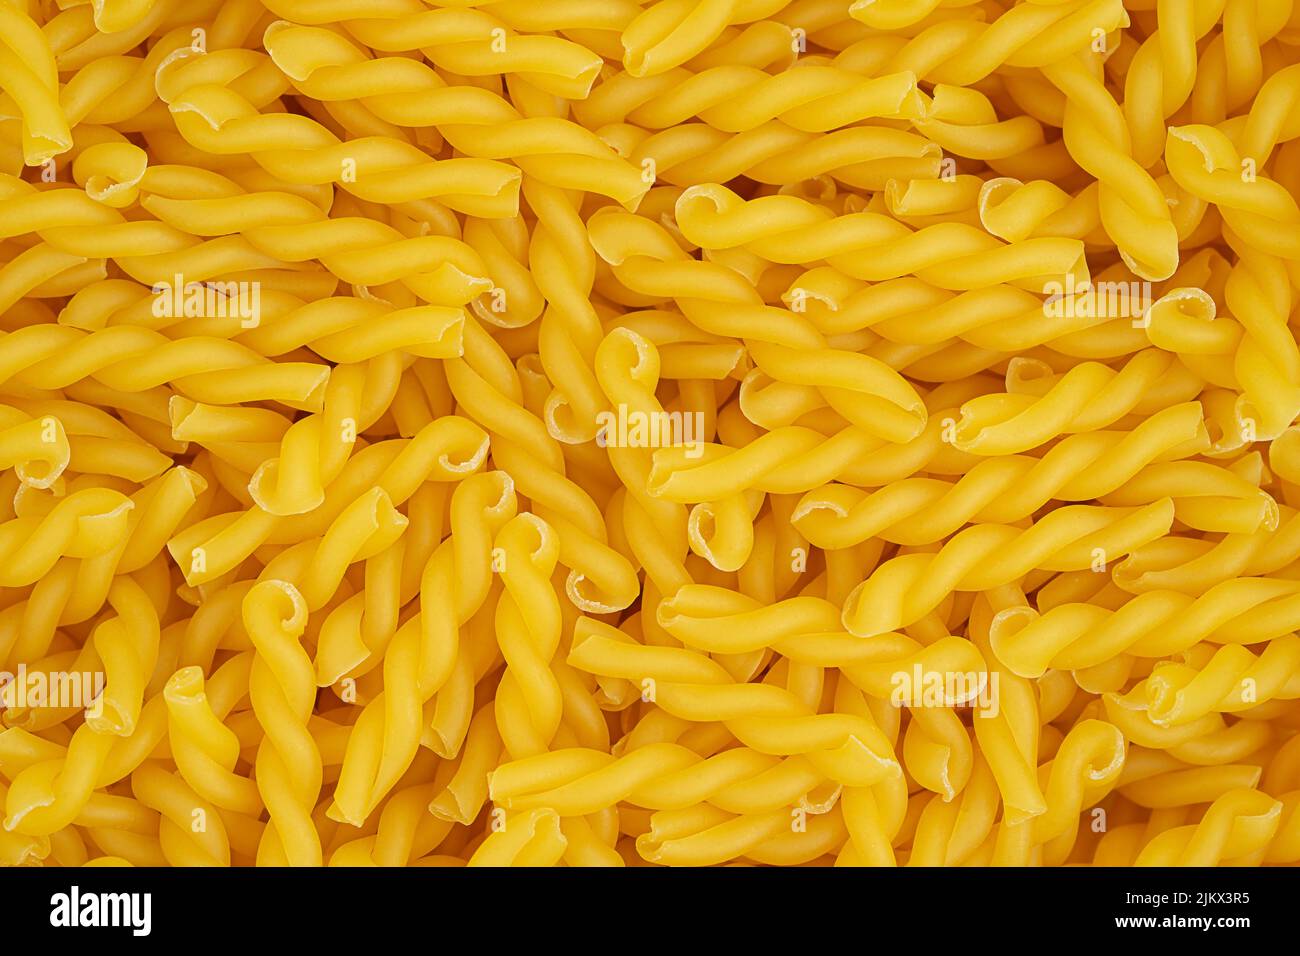 Italienische Pasta gemelli Hintergrund. Draufsicht. Hochwertige Fotos Stockfoto